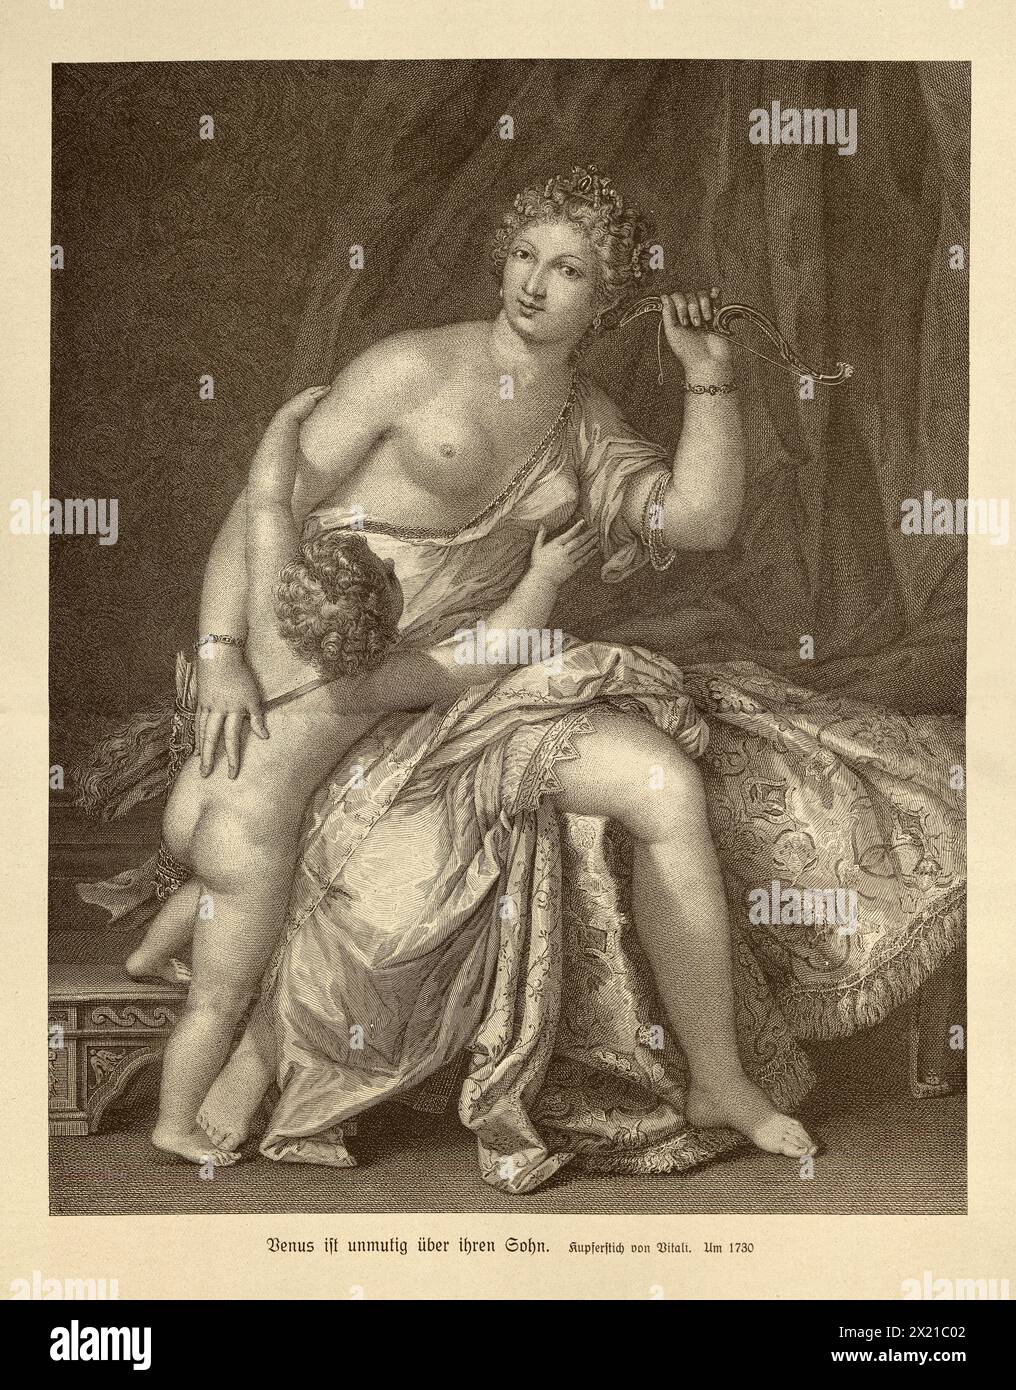 Vénus désarmant Cupidon, Déesse assise sur un lit tenant un arc aloft, et Cupid essayant d'atteindre l'arme, gravure du 18th siècle Banque D'Images